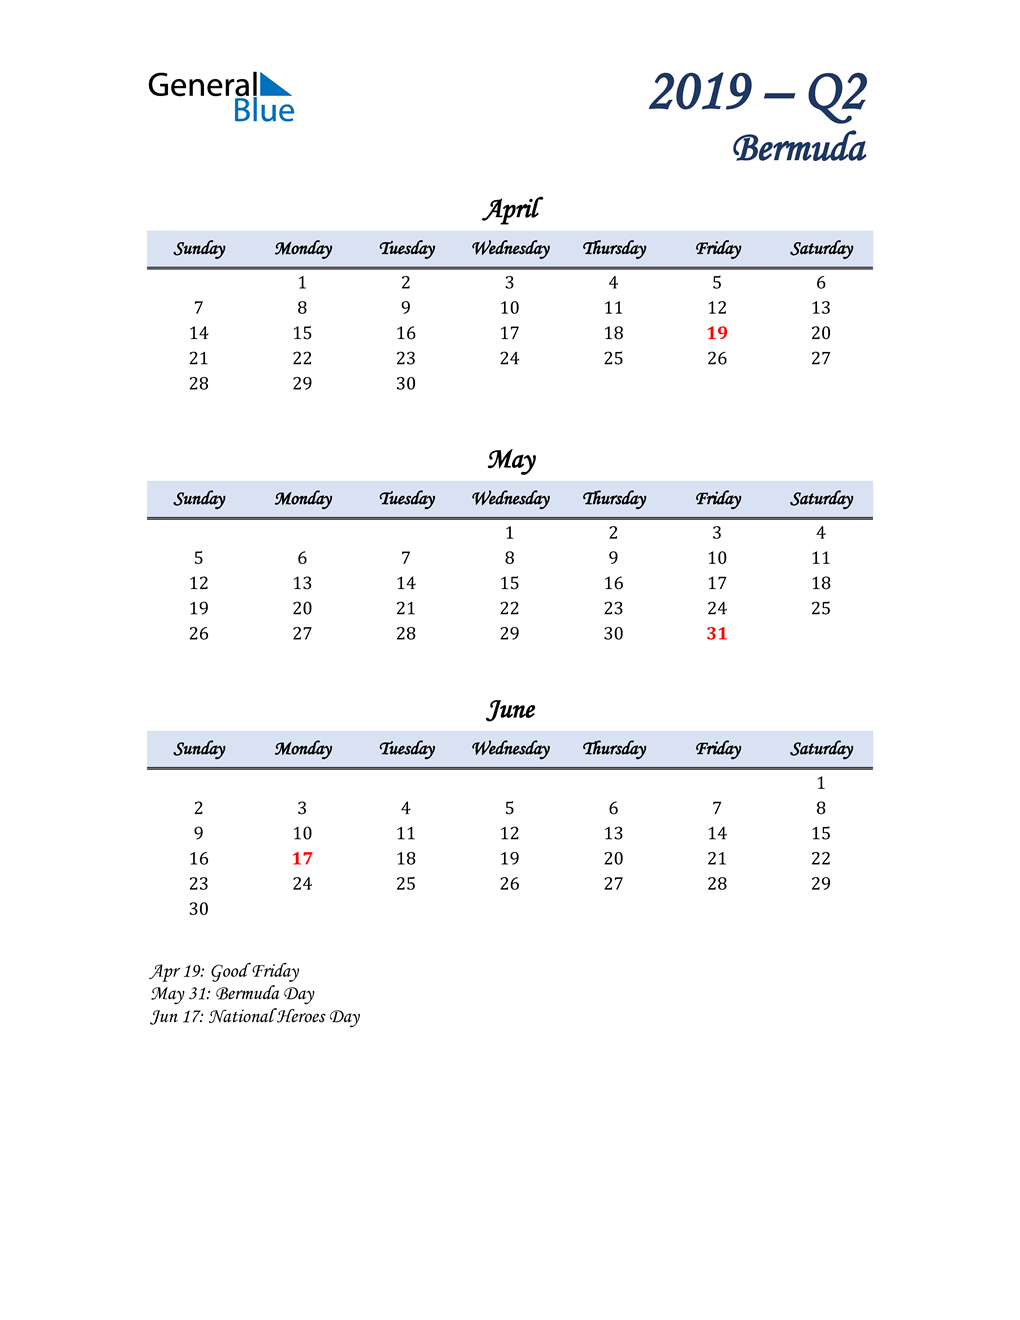  April, May, and June Calendar for Bermuda